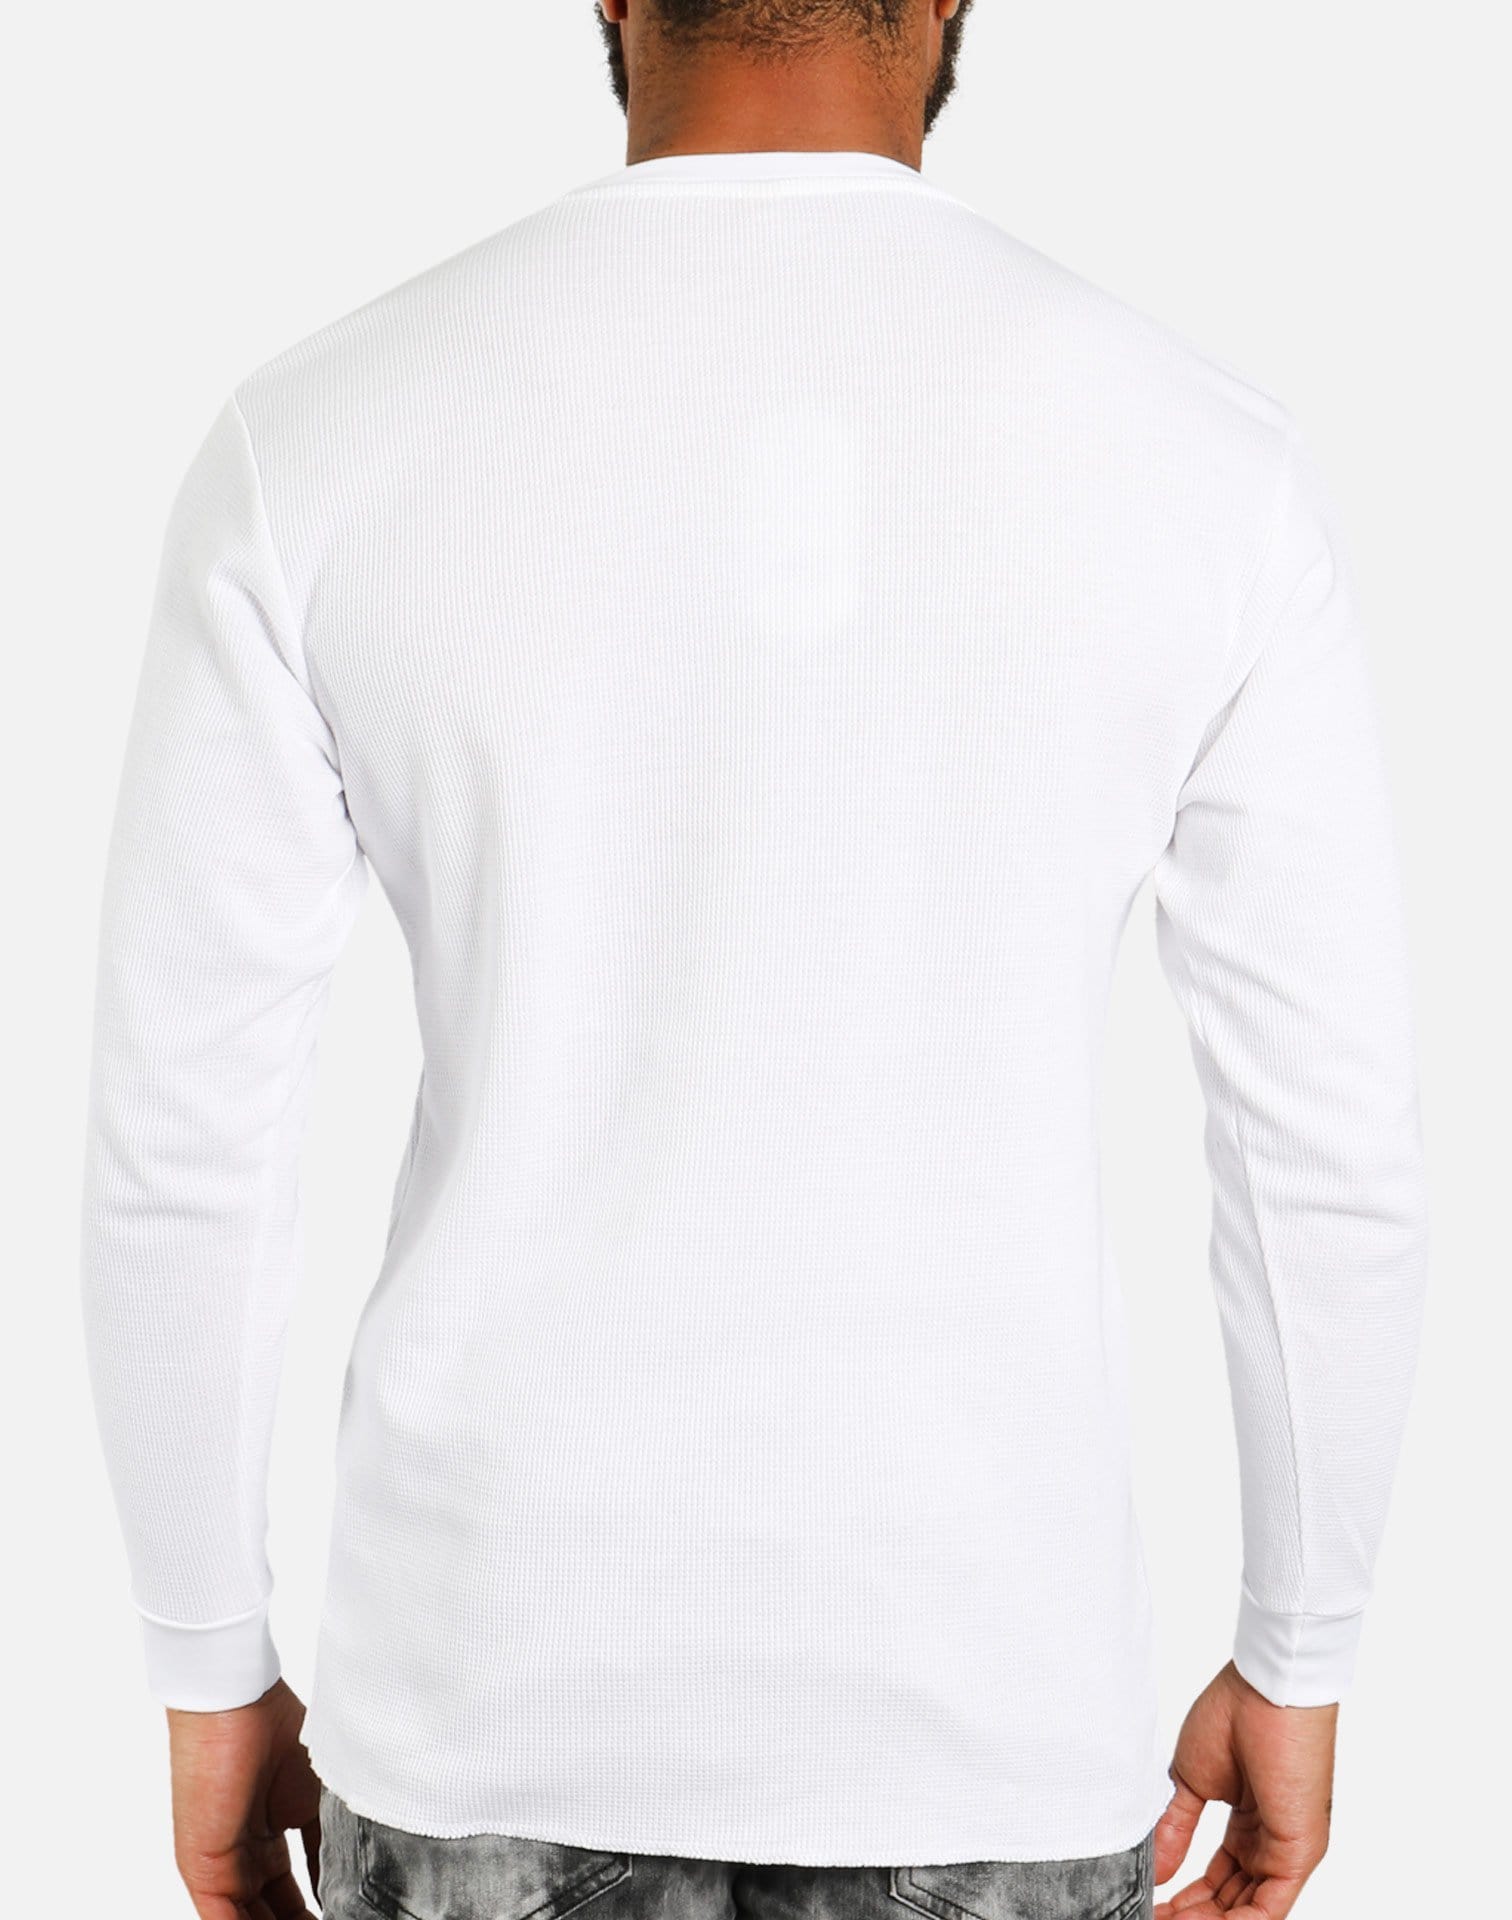 Denim House Basic Thermal Shirt (White)